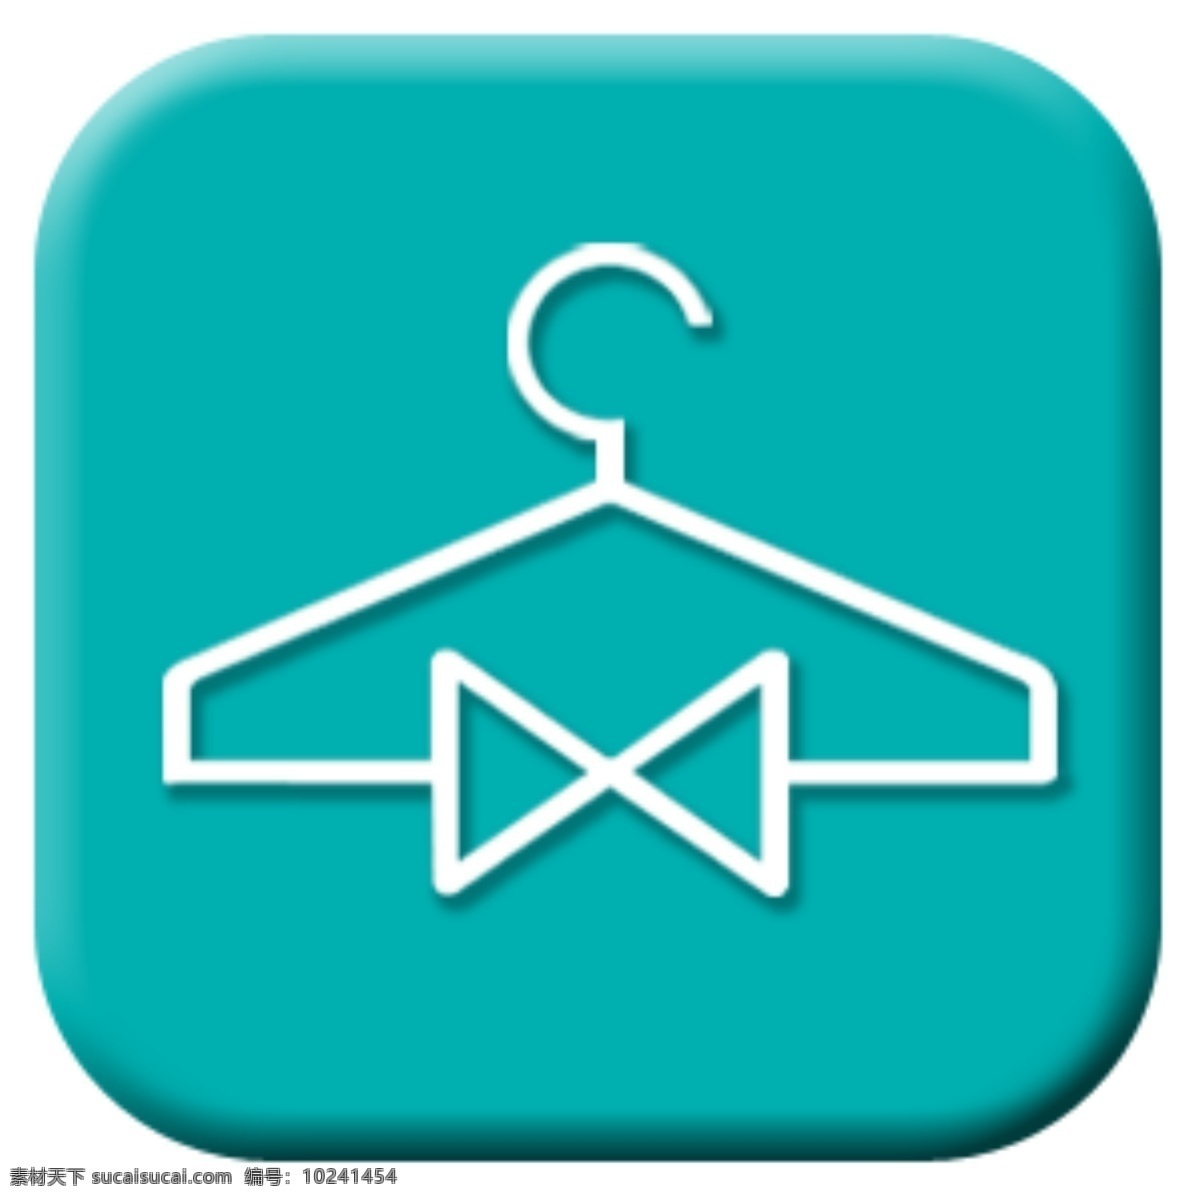 蓝绿色 按钮 app 图标 衣架 干洗 简单 简约 扁平化 领结 衣挂 服装 标志图标 企业 logo 标志